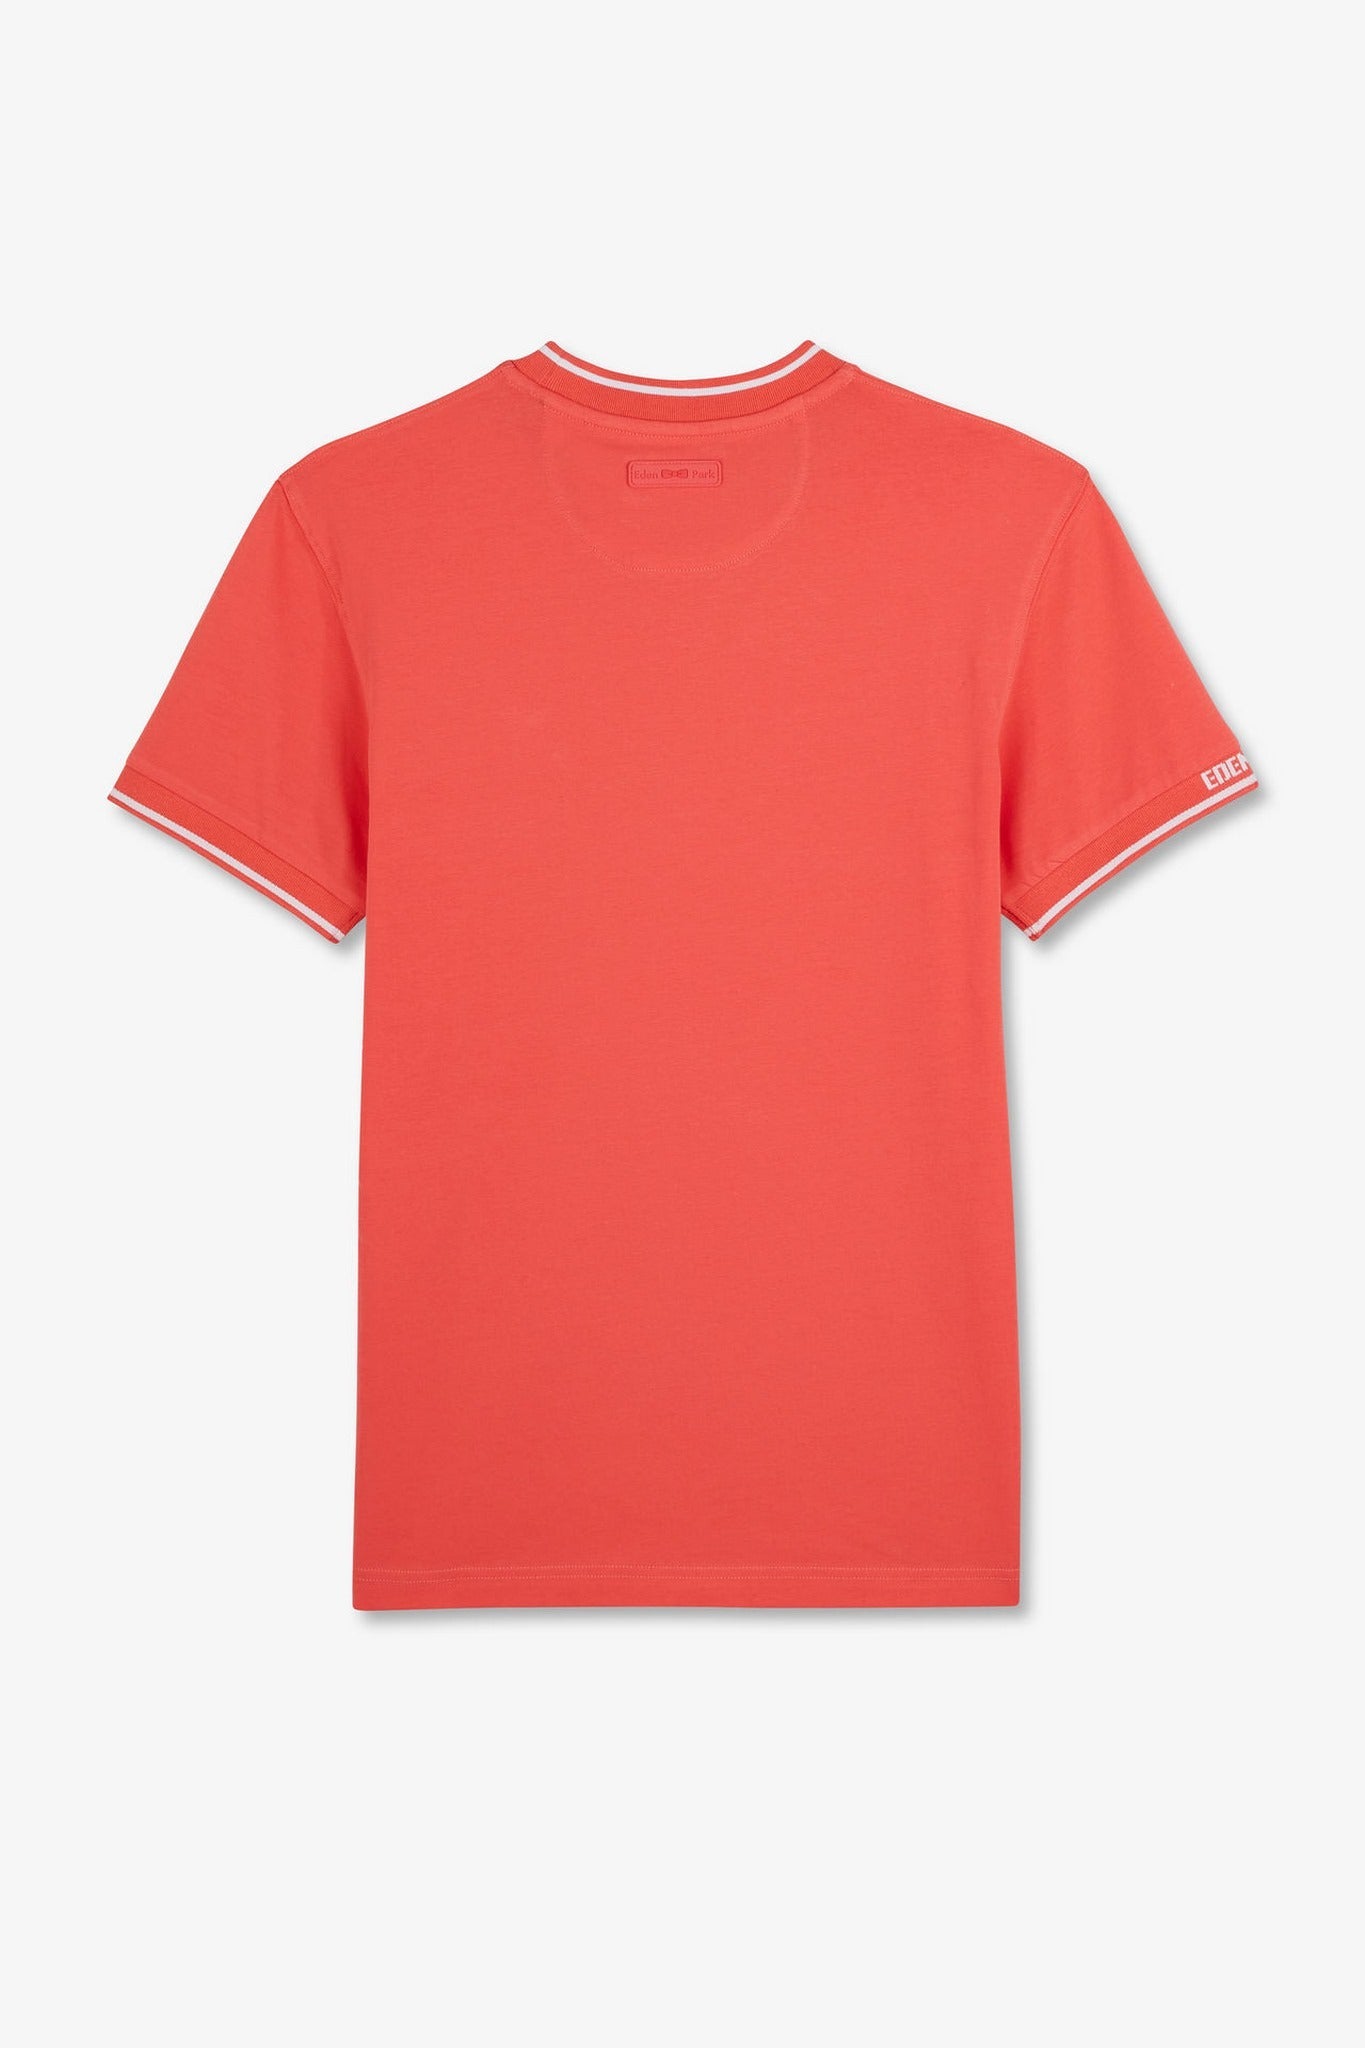 T-shirt rose à manches courtes - Image 5